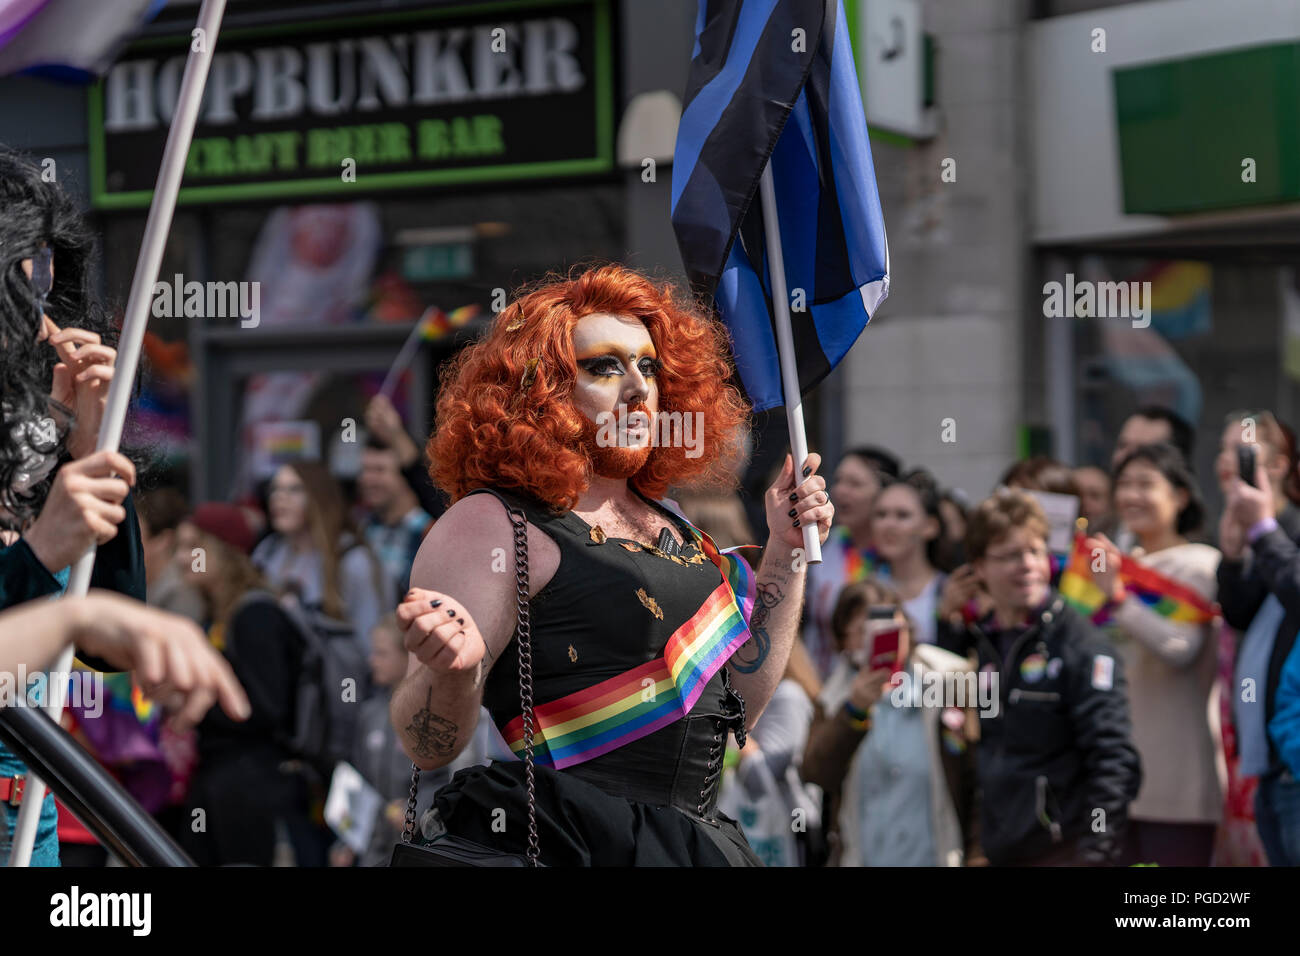 Cardiff, Pays de Galles, le 25 août 2018 : drag queen participe au défilé annuel de la fierté Cymru à Cardiff au Pays de Galles le 25 août 2018 ©Daniel Damaschin Crédit : Daniel Damaschin/Alamy Live News Banque D'Images